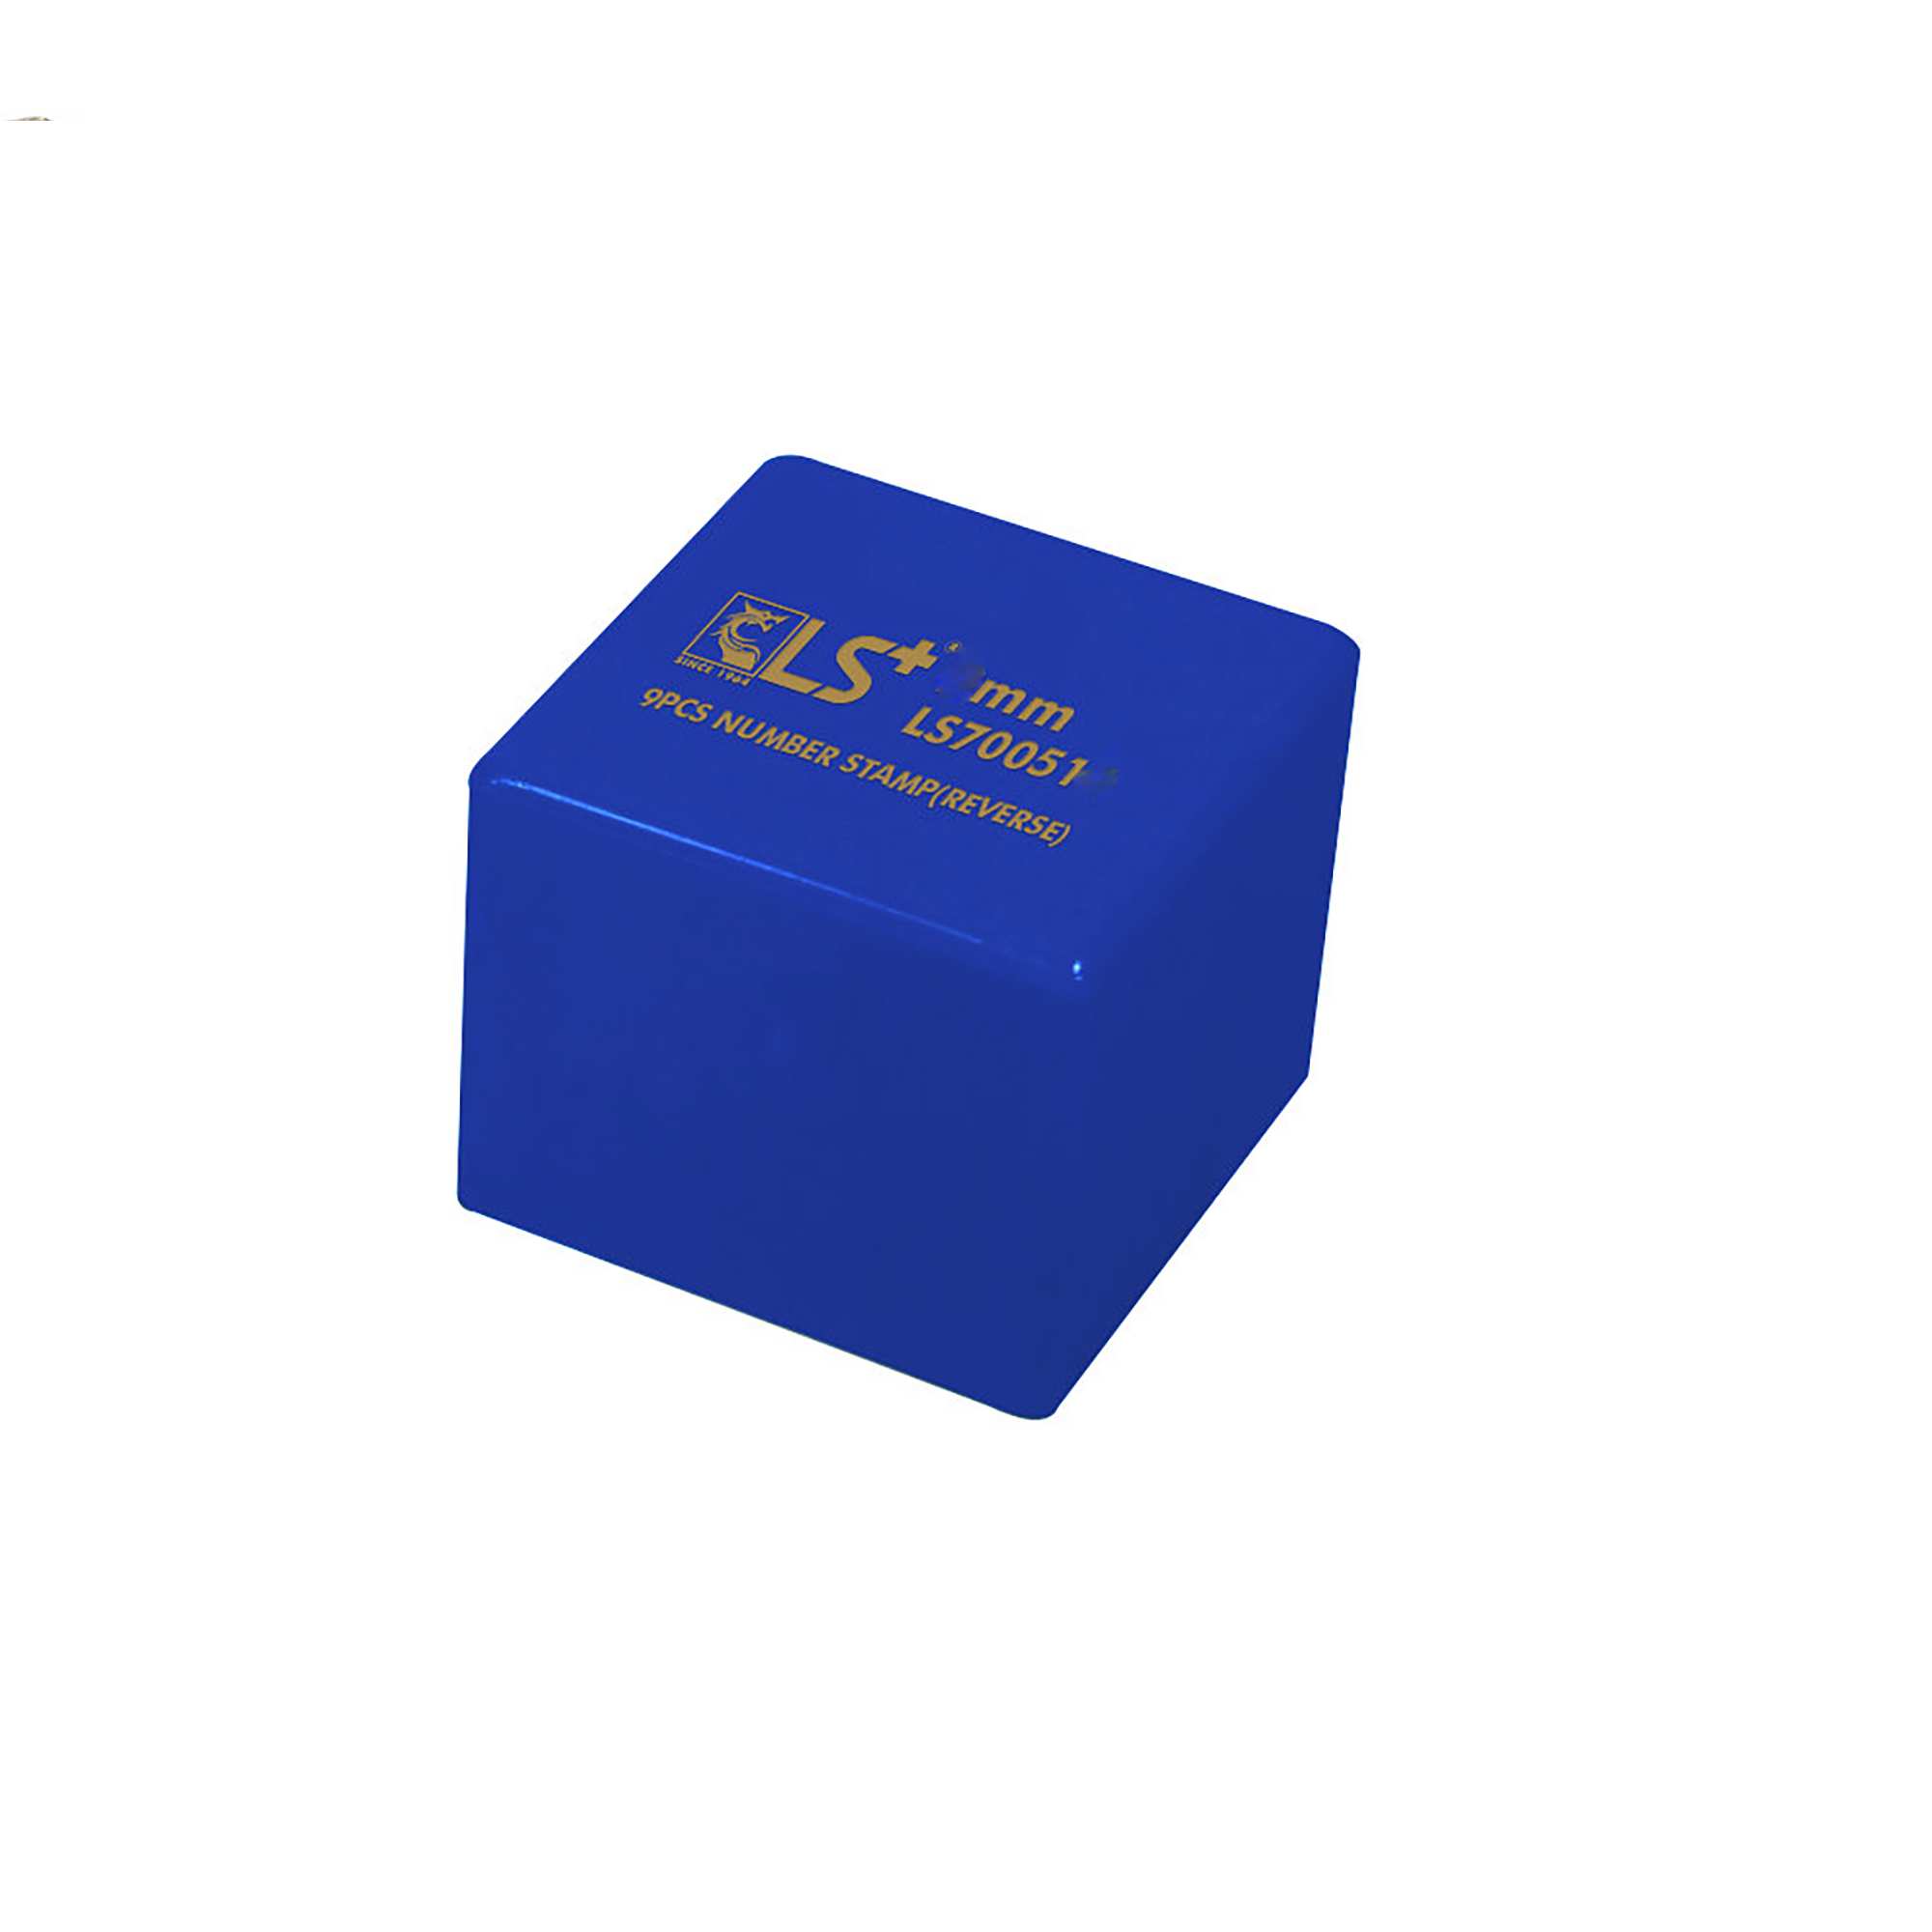 Hình ảnh 5 của mặt hàng Đóng Số Bộ 9pcs Ngược 6mm LS- hộp xanh